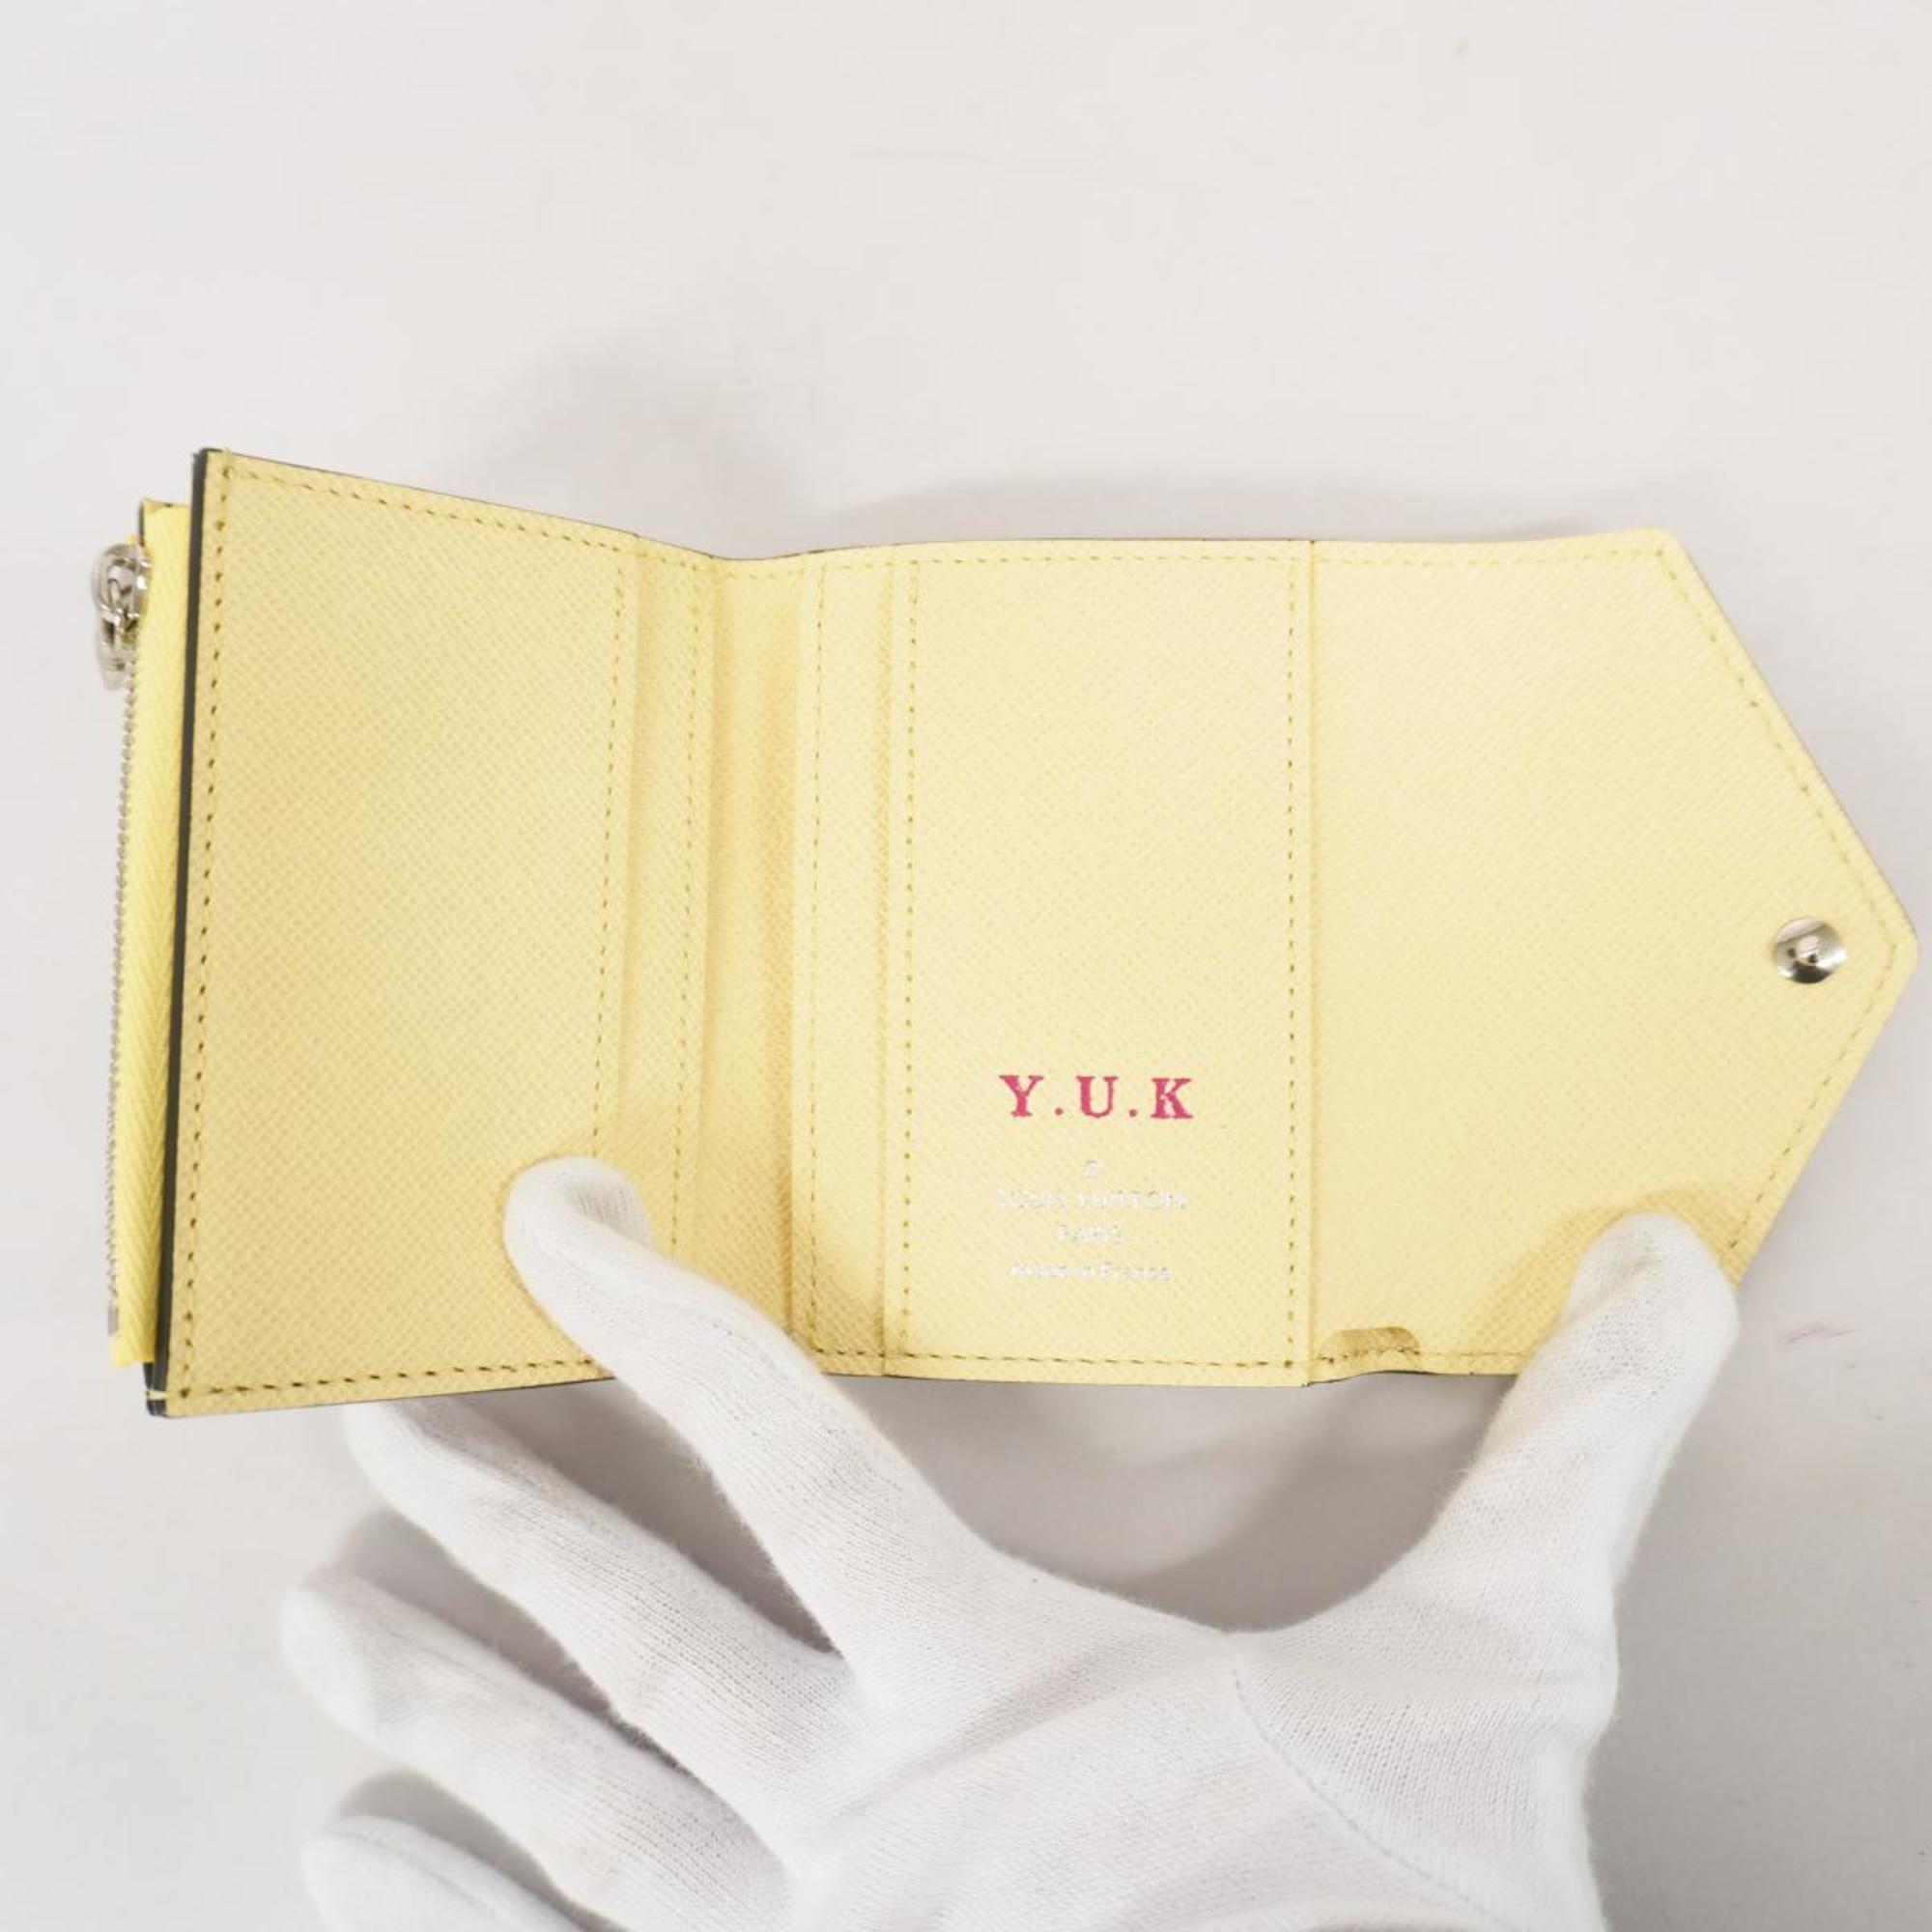 ルイ・ヴィトン(Louis Vuitton) ルイ・ヴィトン 三つ折り財布 LVポップ ポルトフォイユゾエ M68673 マルチカラーレディース